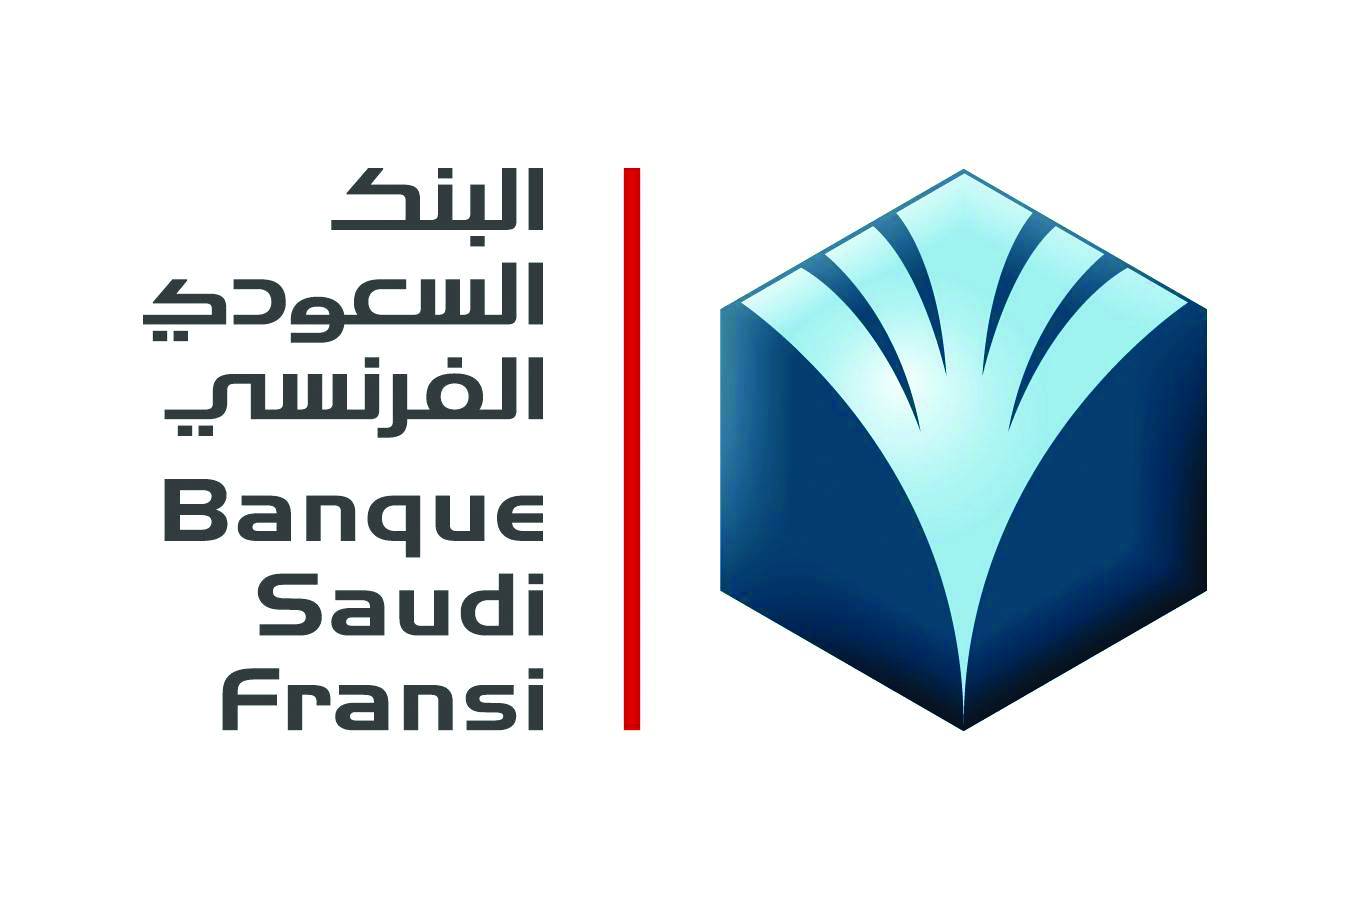 مميزات التمويل الشخصي من البنك السعودي الفرنسي والمستندات المطلوبة